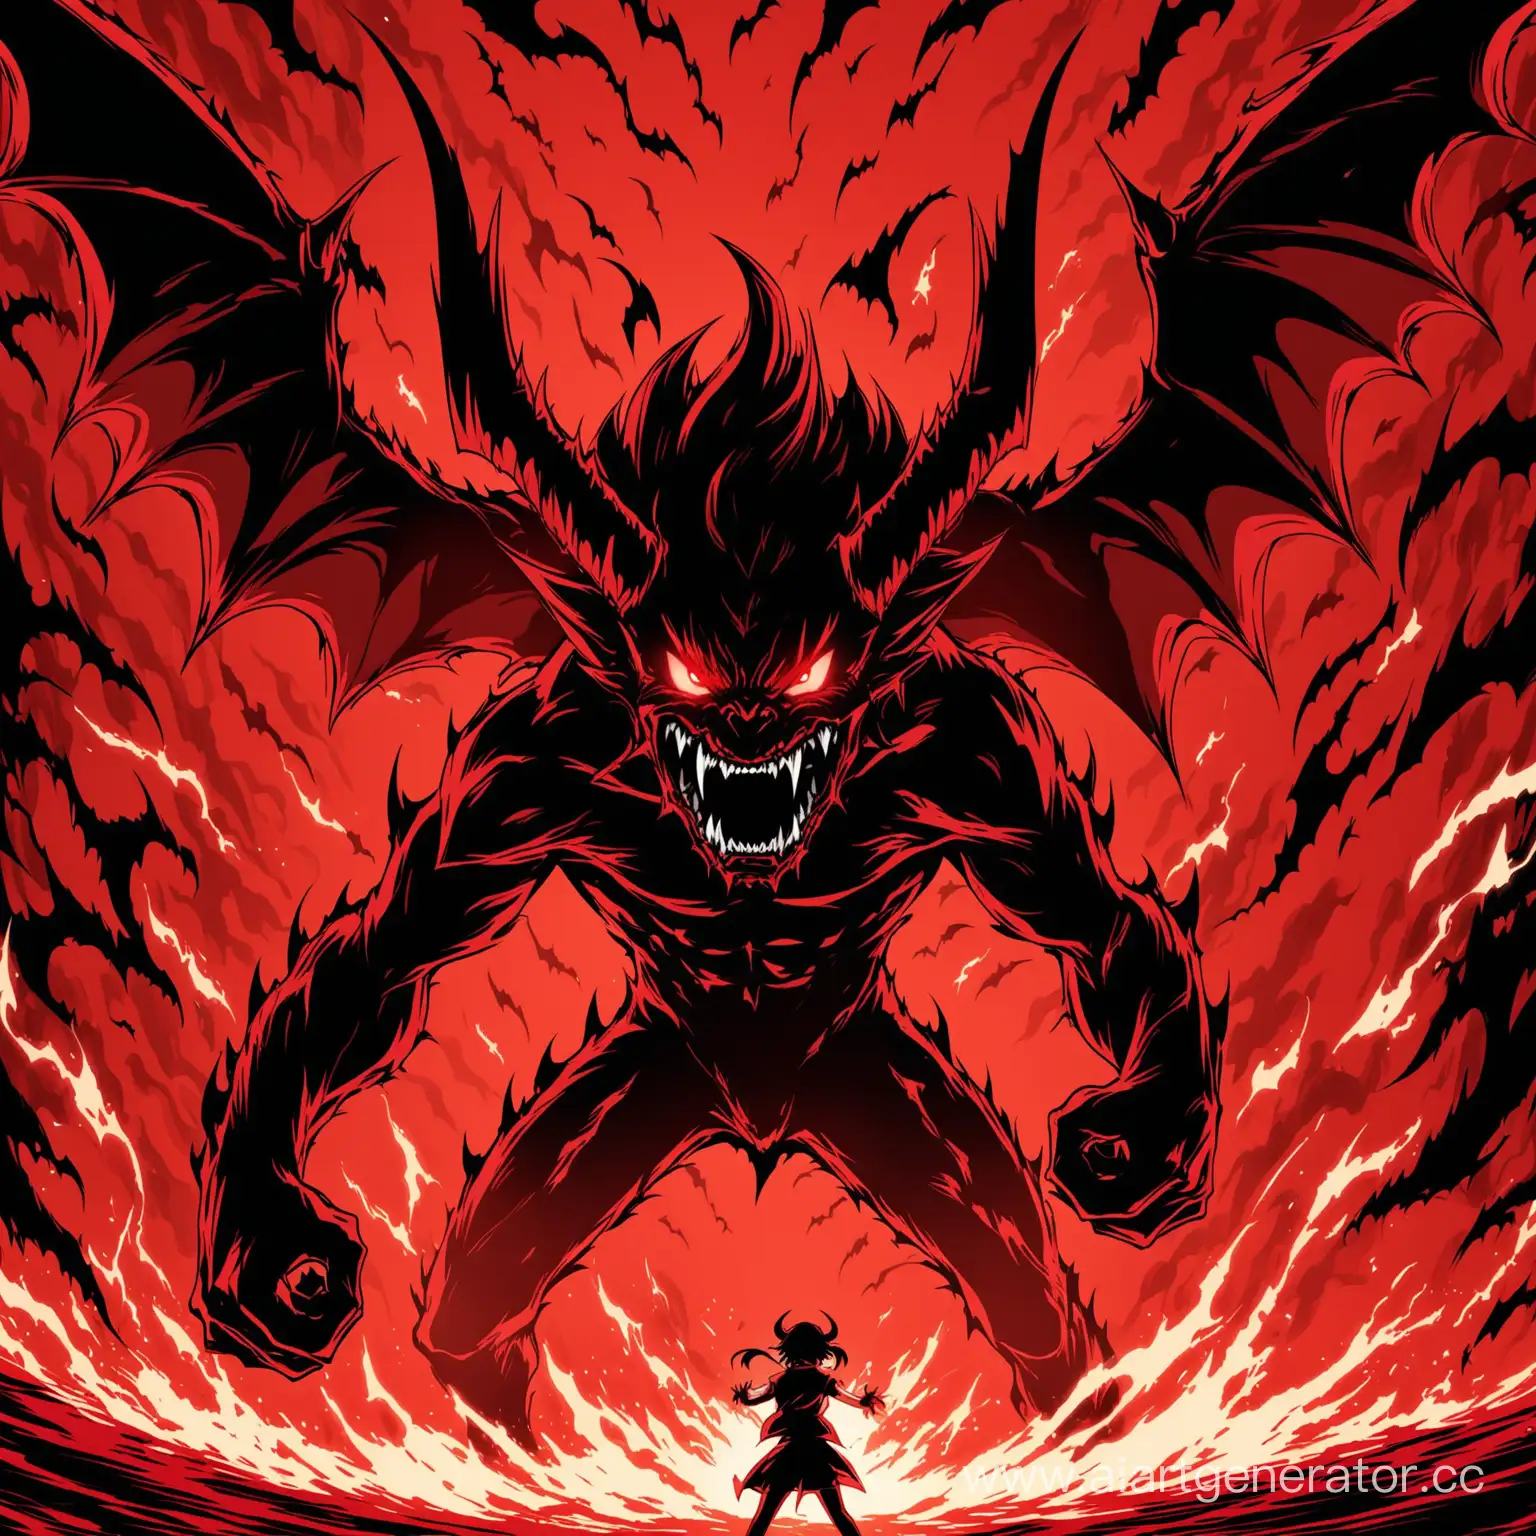 Demon eater, red tones, anime, demons, anger, fear